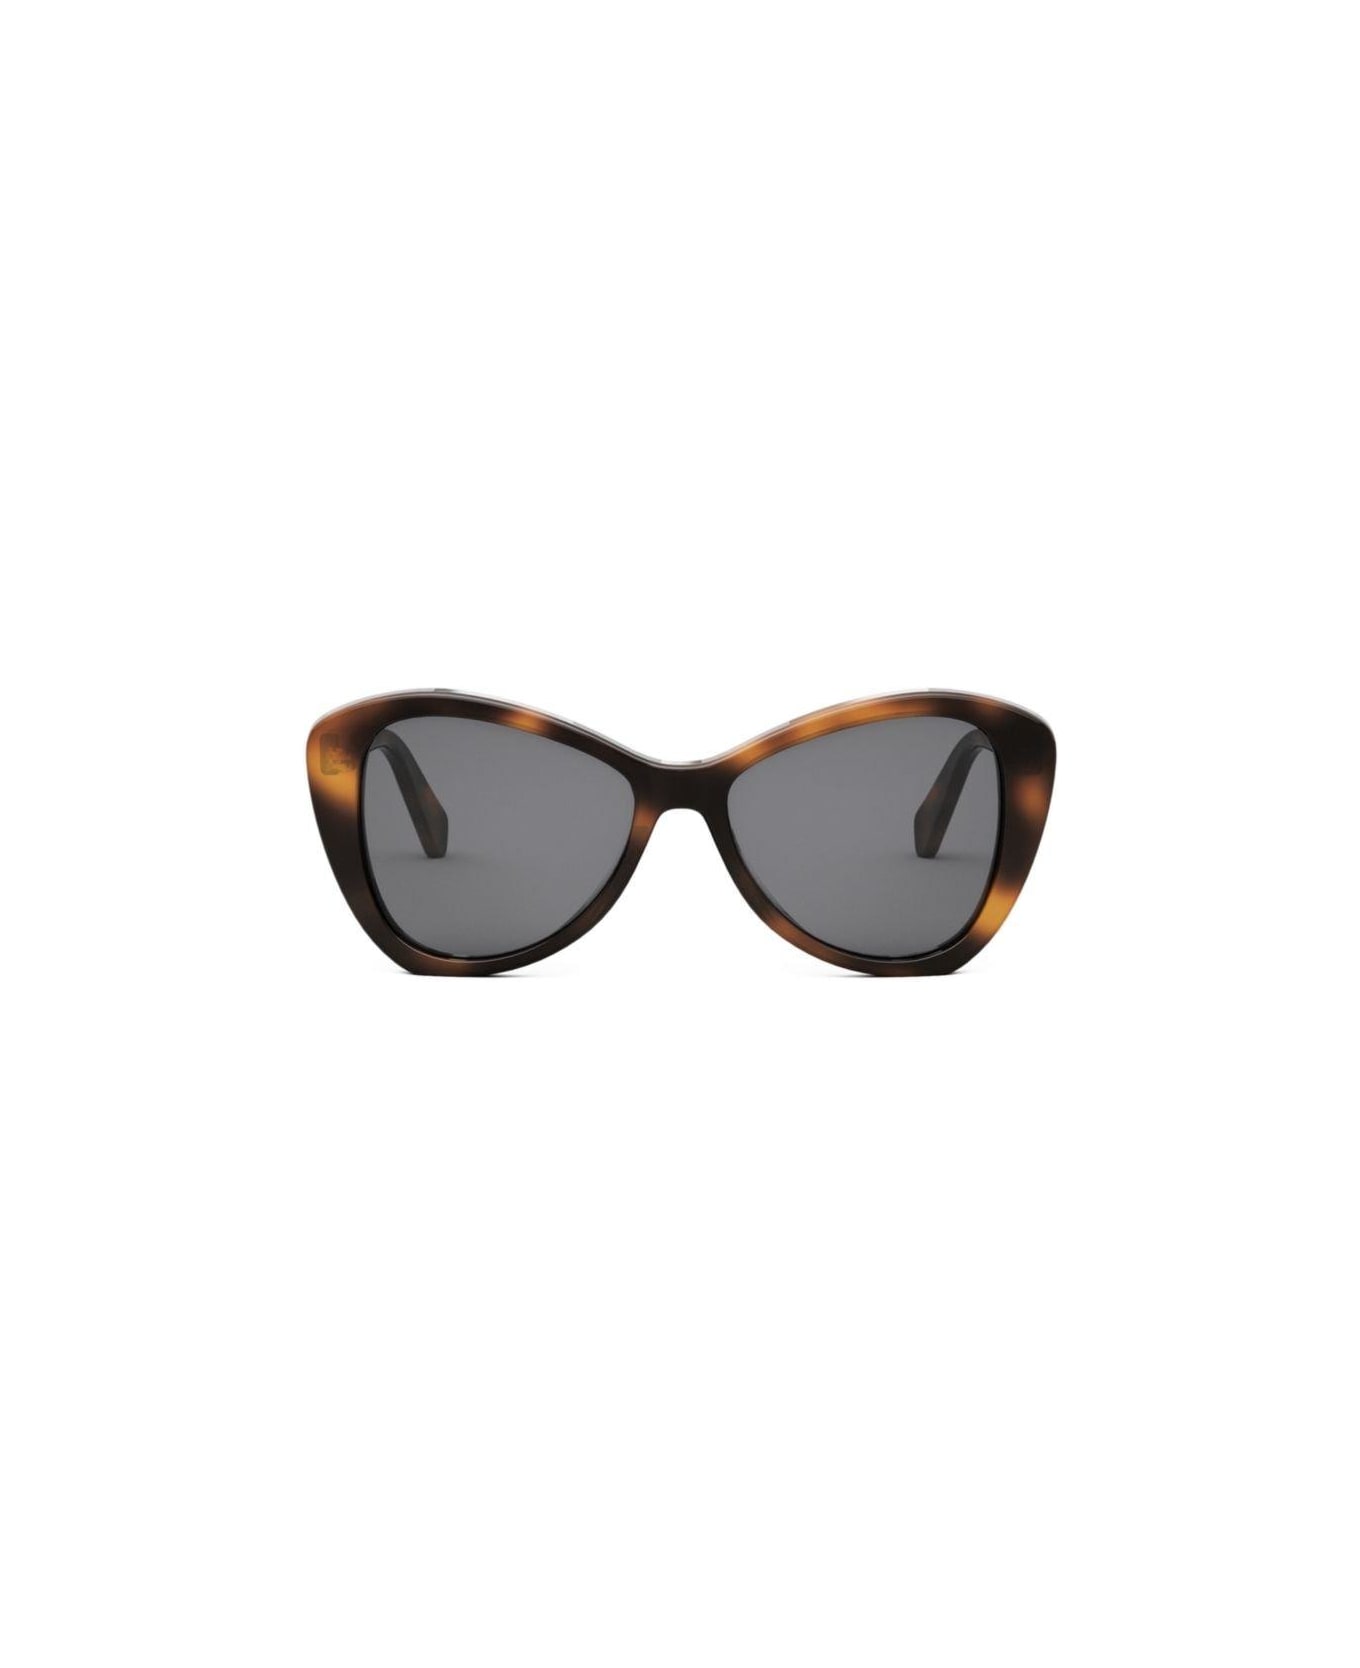 Celine Butterfly Frame Sunglasses WARWICK - 53a